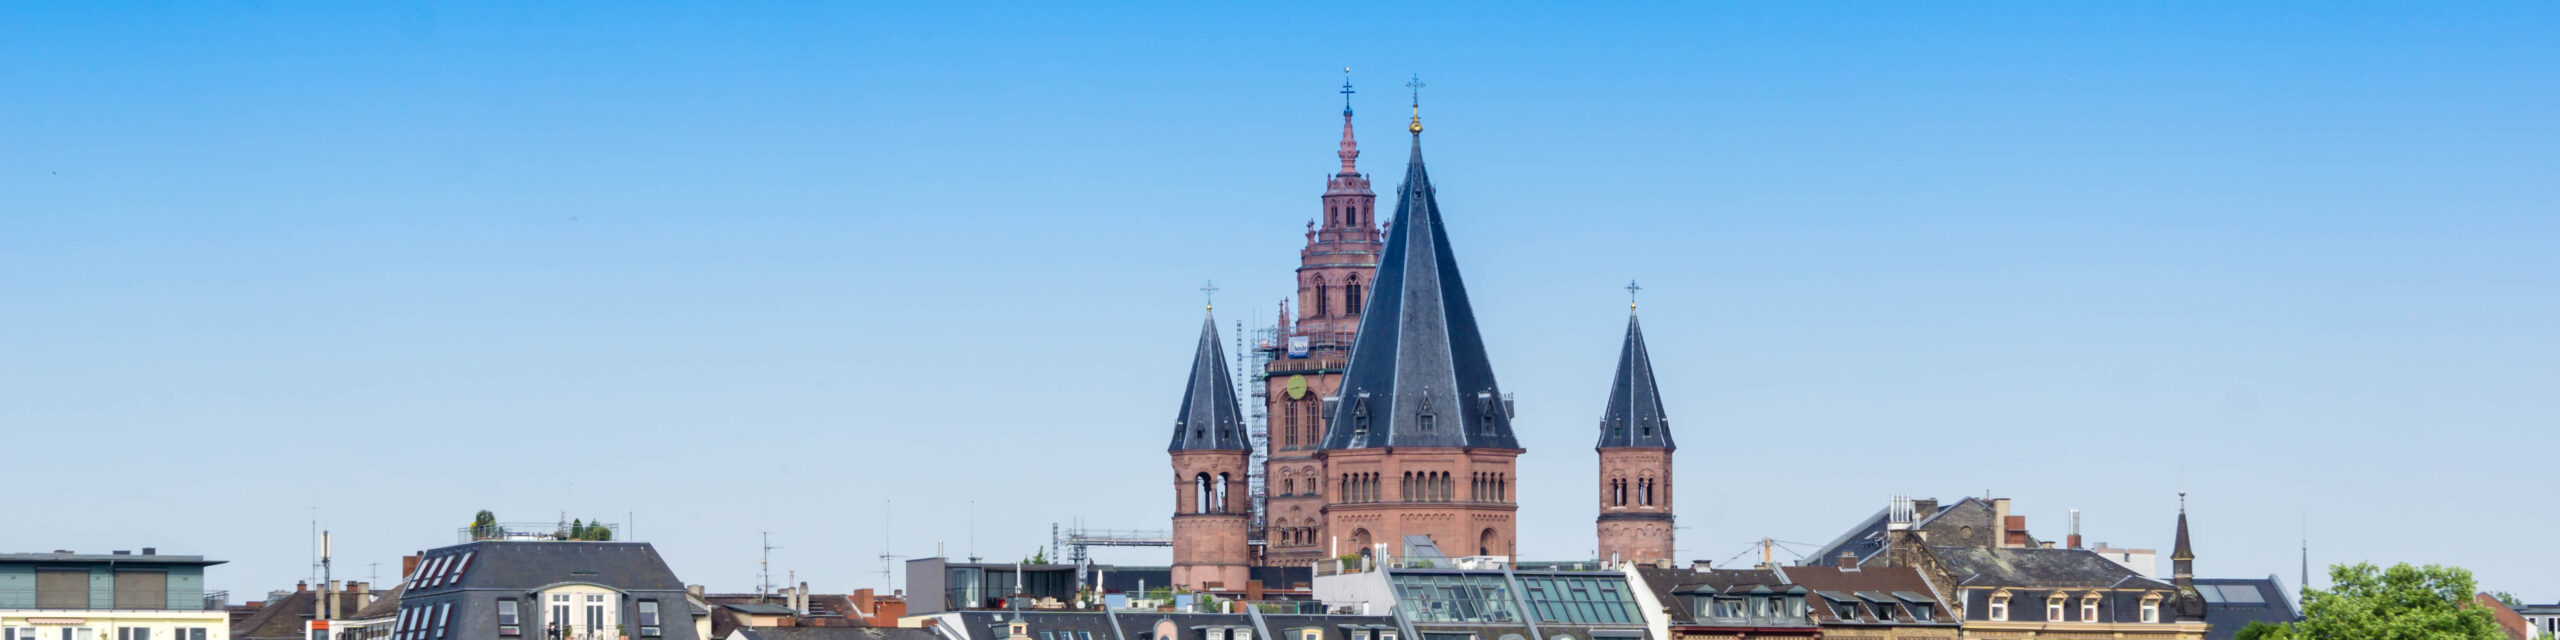 Blick auf Mainz und die Kathedrale